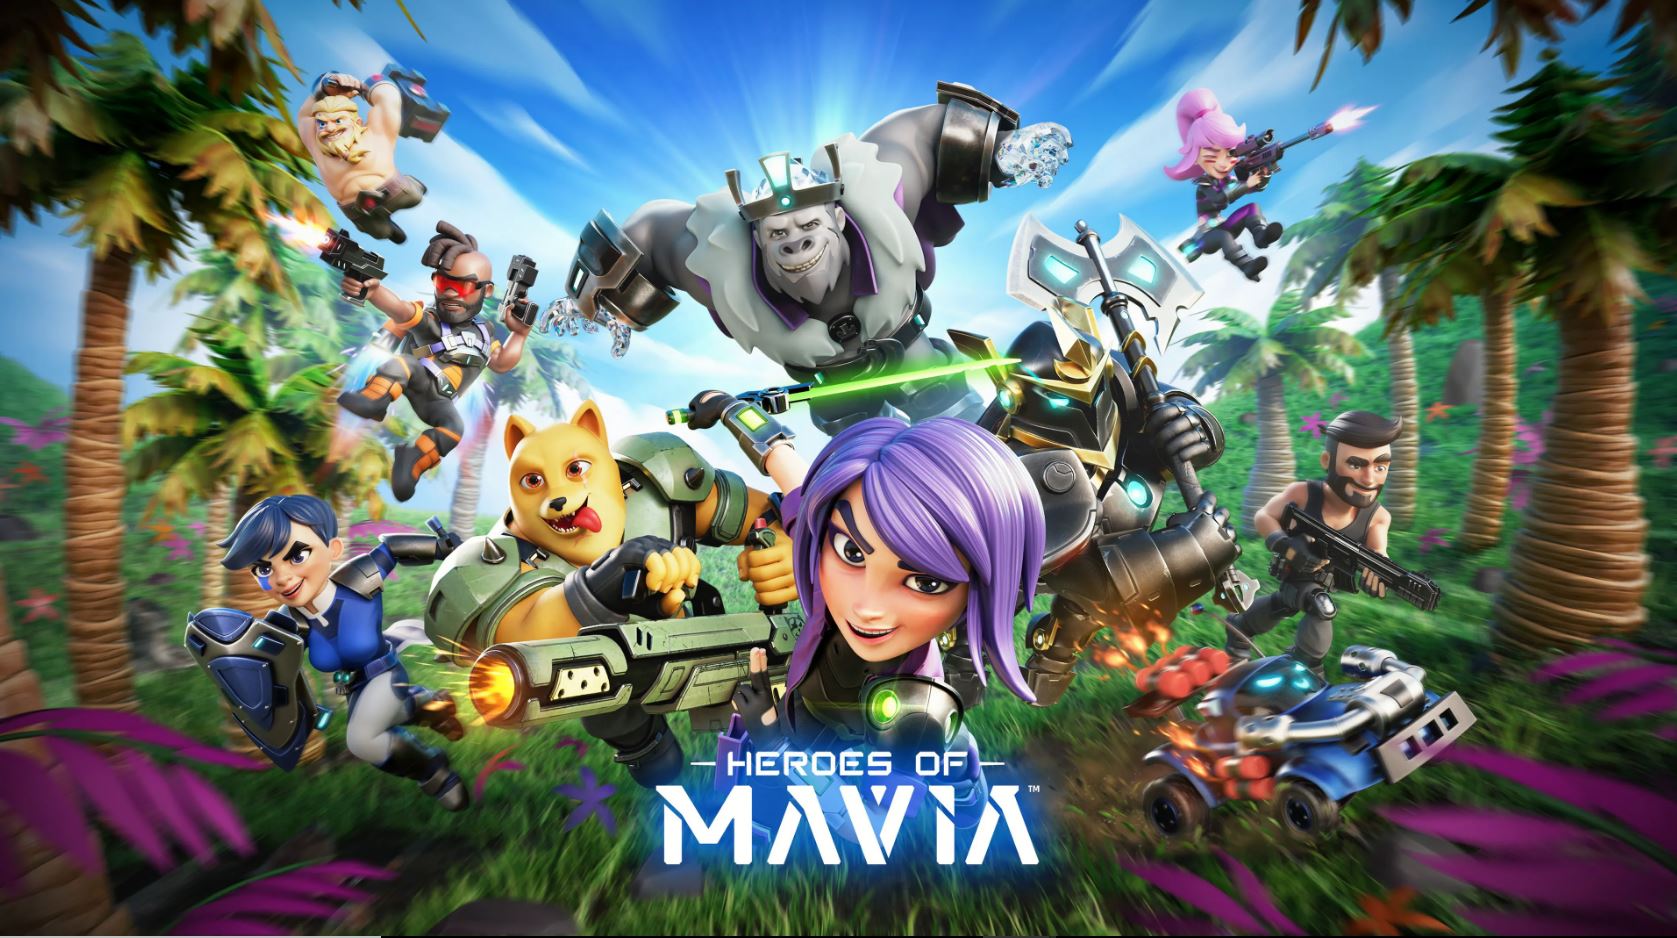 Byl zveřejněn trailer Heroes of Mavia před uvedením v lednu 2024